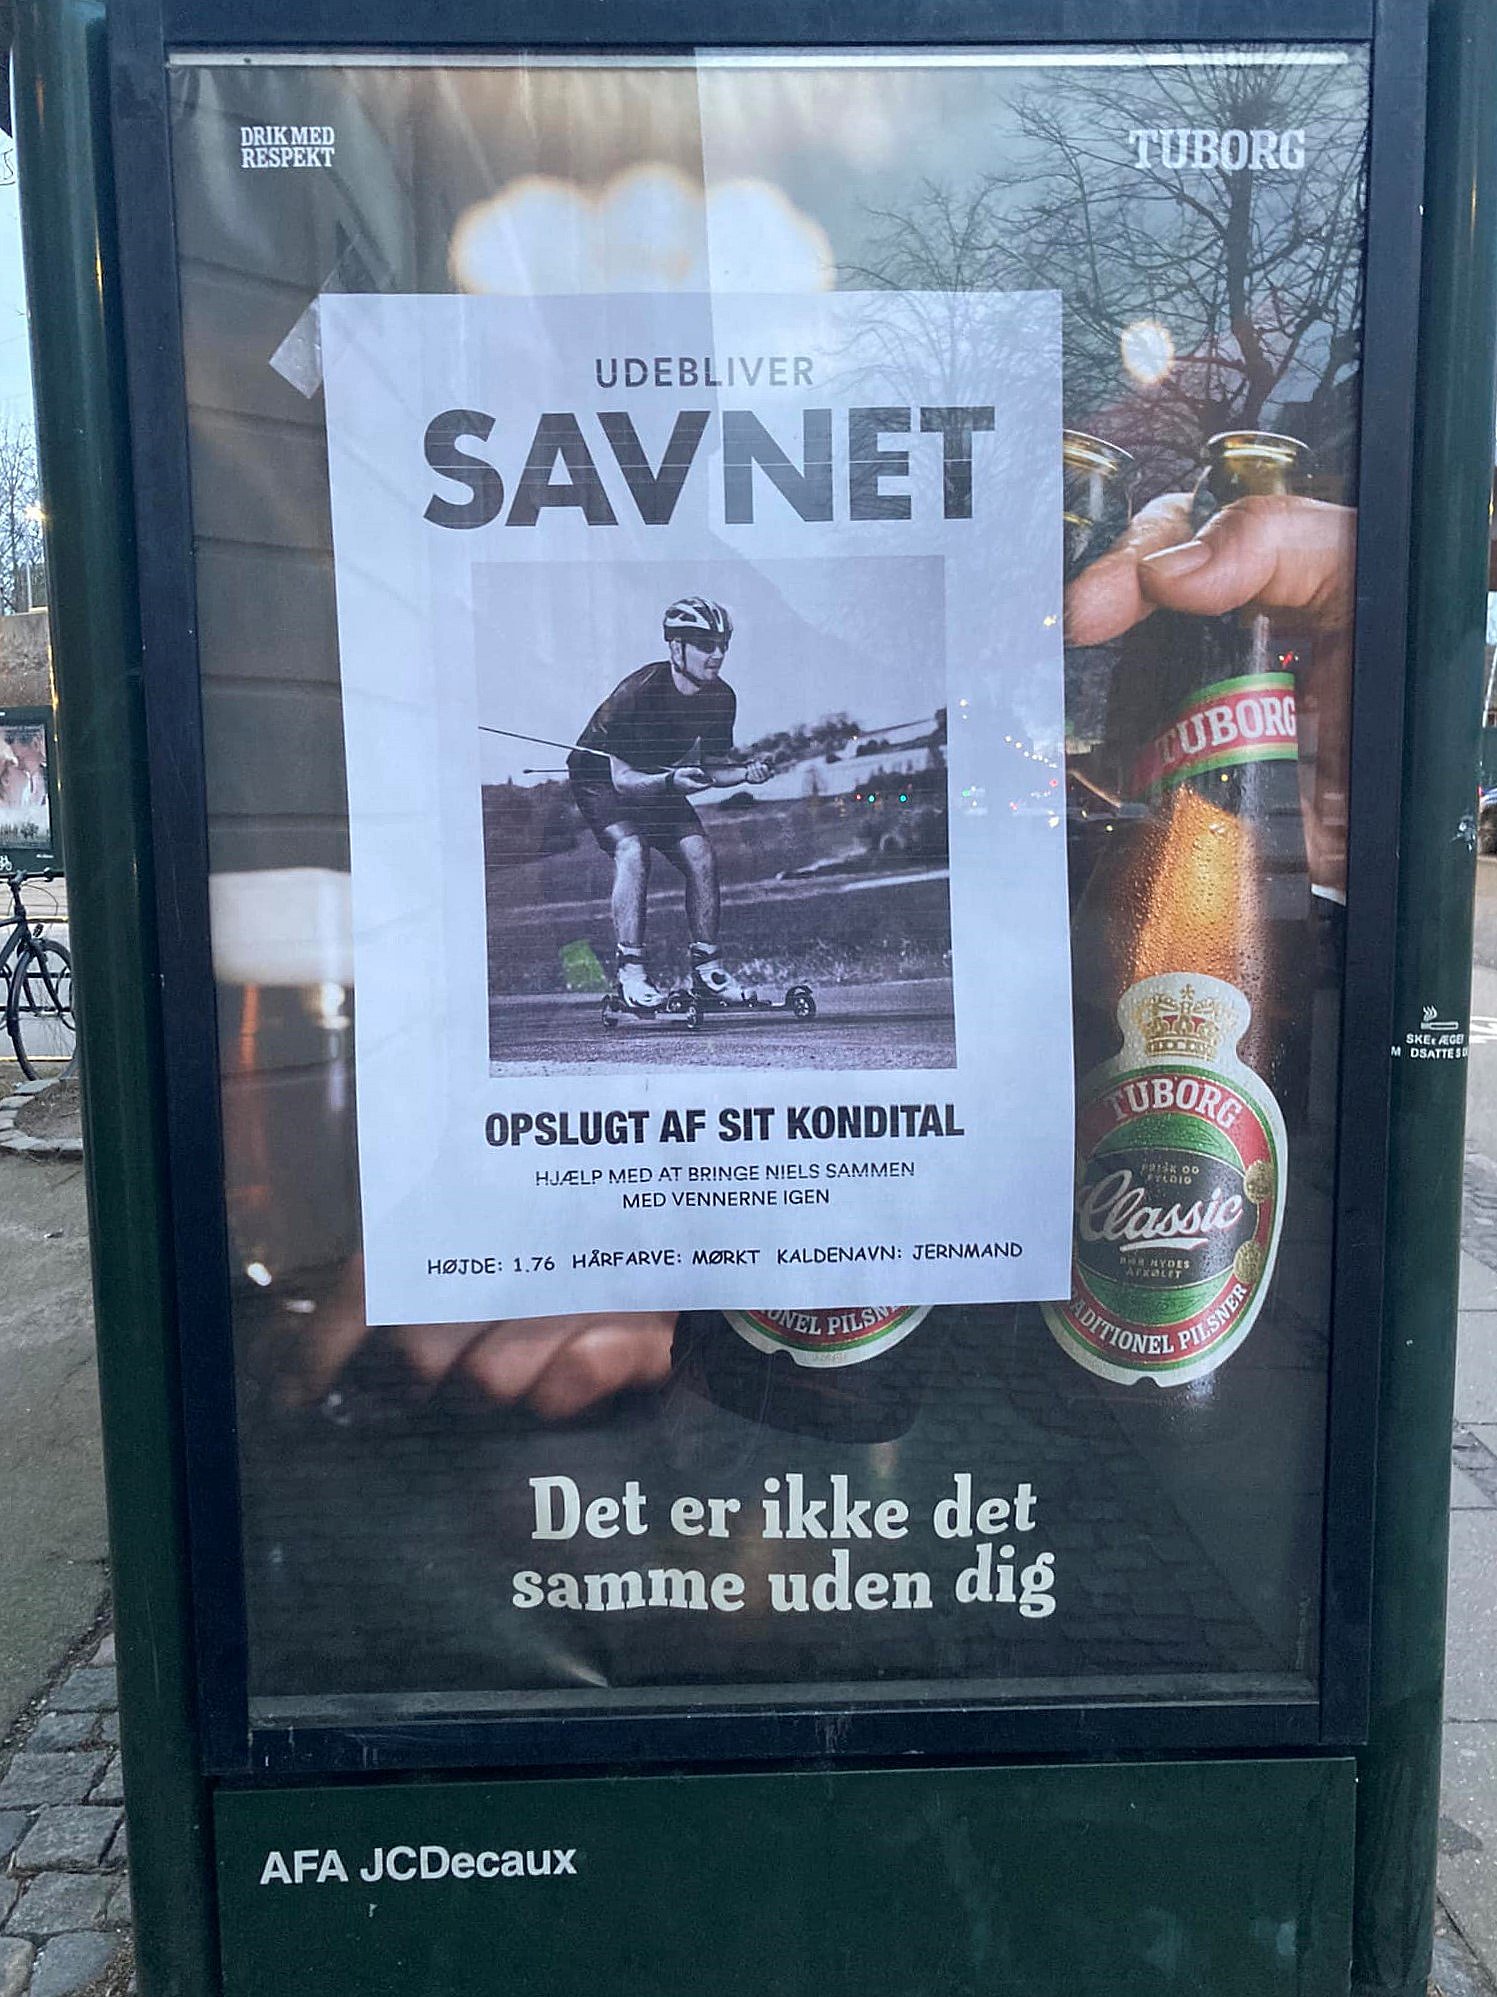 Tuborg-reklame møder Skal man drikke øl for at med fællesskabet? | TV 2 Kosmopol